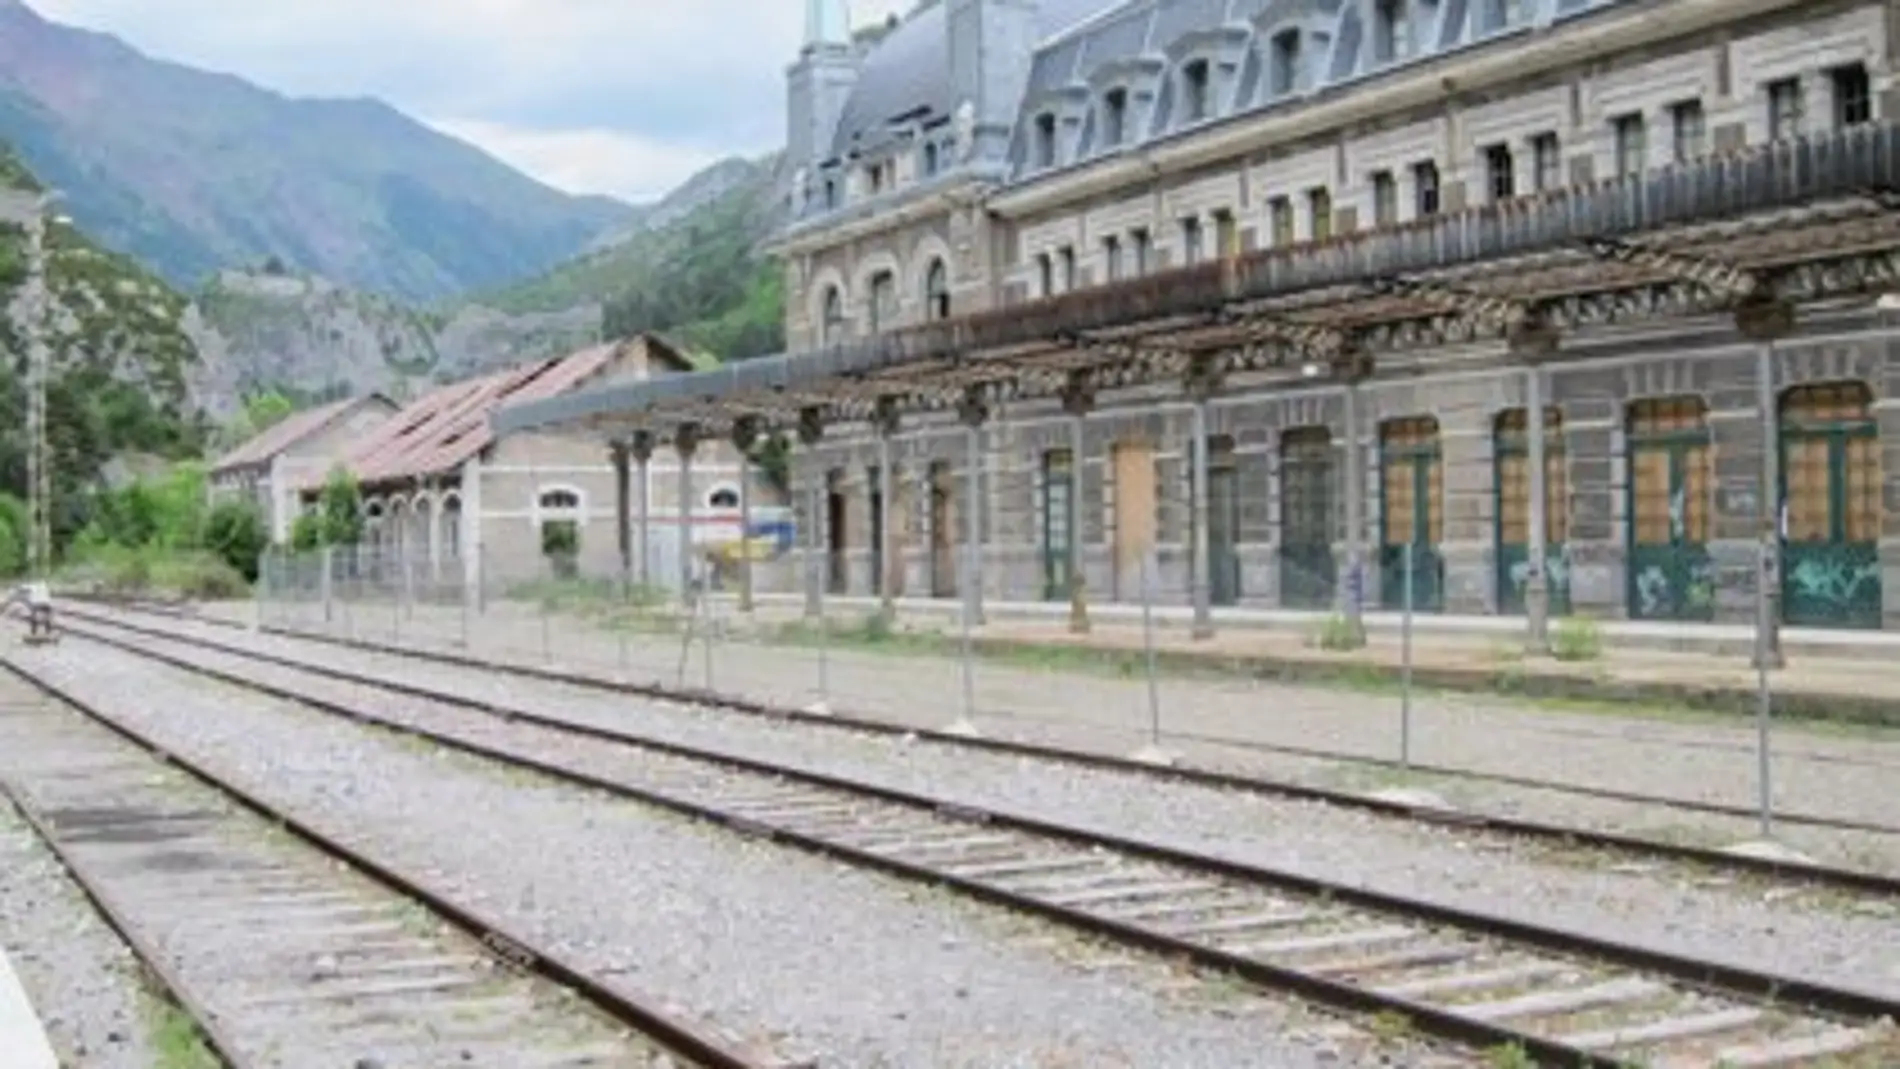 Estación internacional de Canfranc